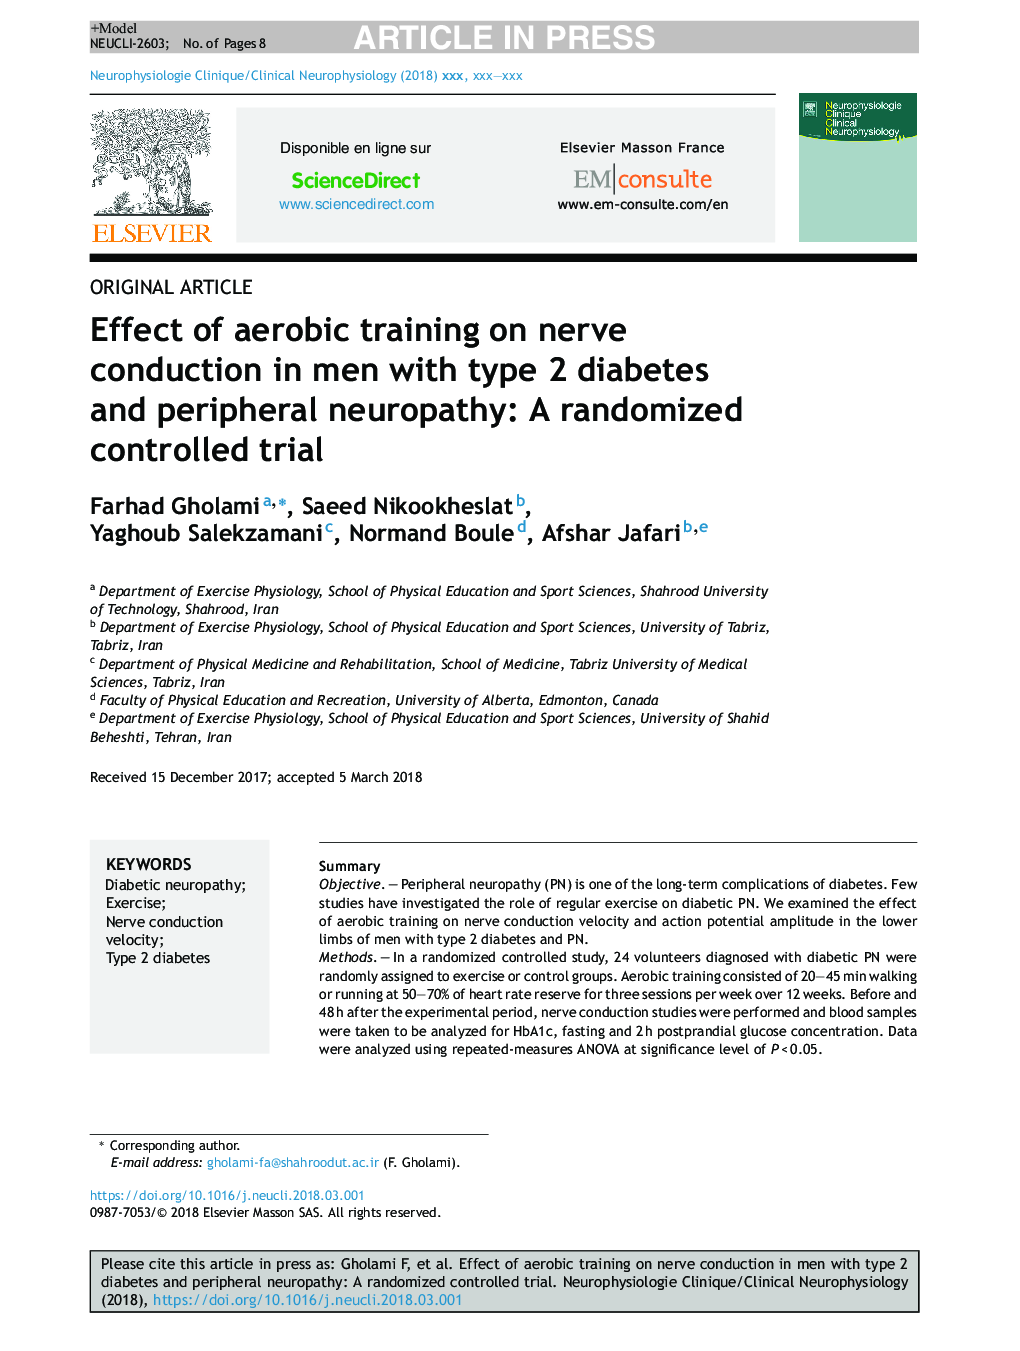 اثر آموزش هوازی بر روی هدایت عصب در مردان مبتلا به دیابت نوع 2 و نوروپاتی محیطی: یک کارآزمایی کنترل شده تصادفی 